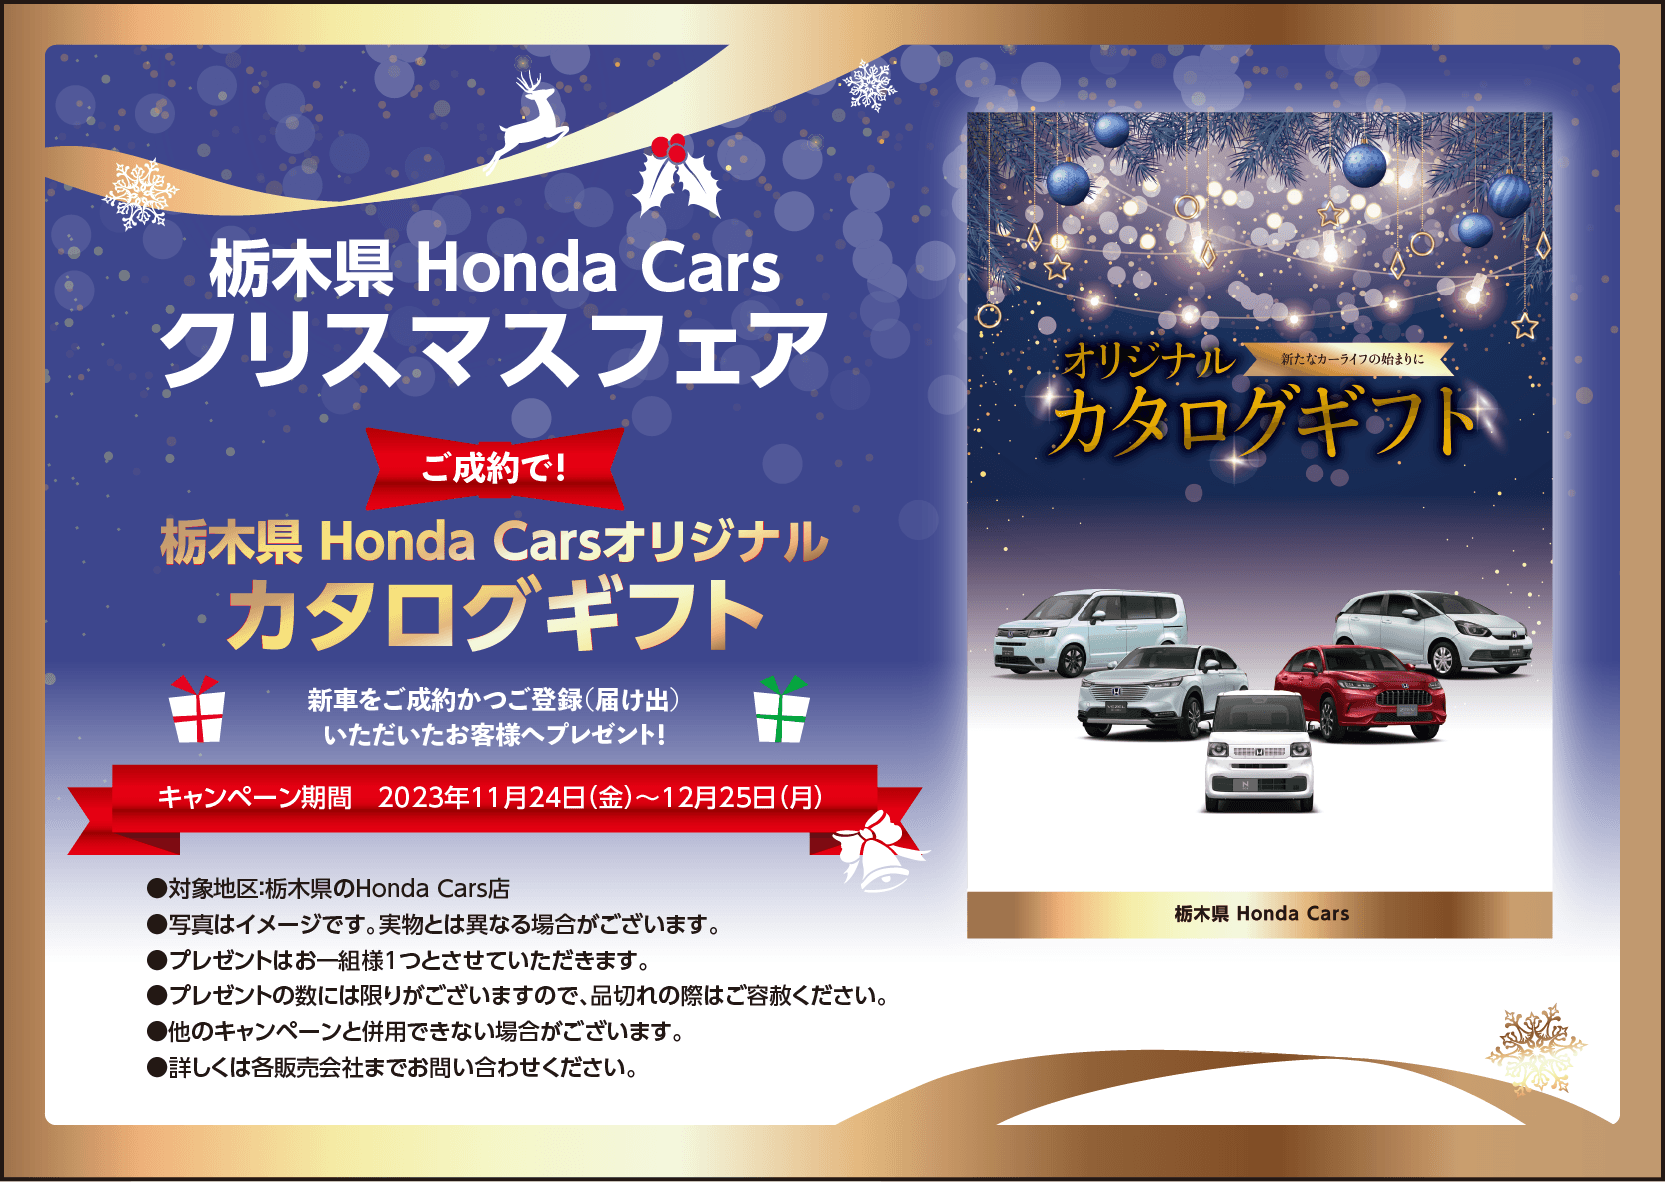 Hondaハート オリジナルバケットバッグプレゼント！